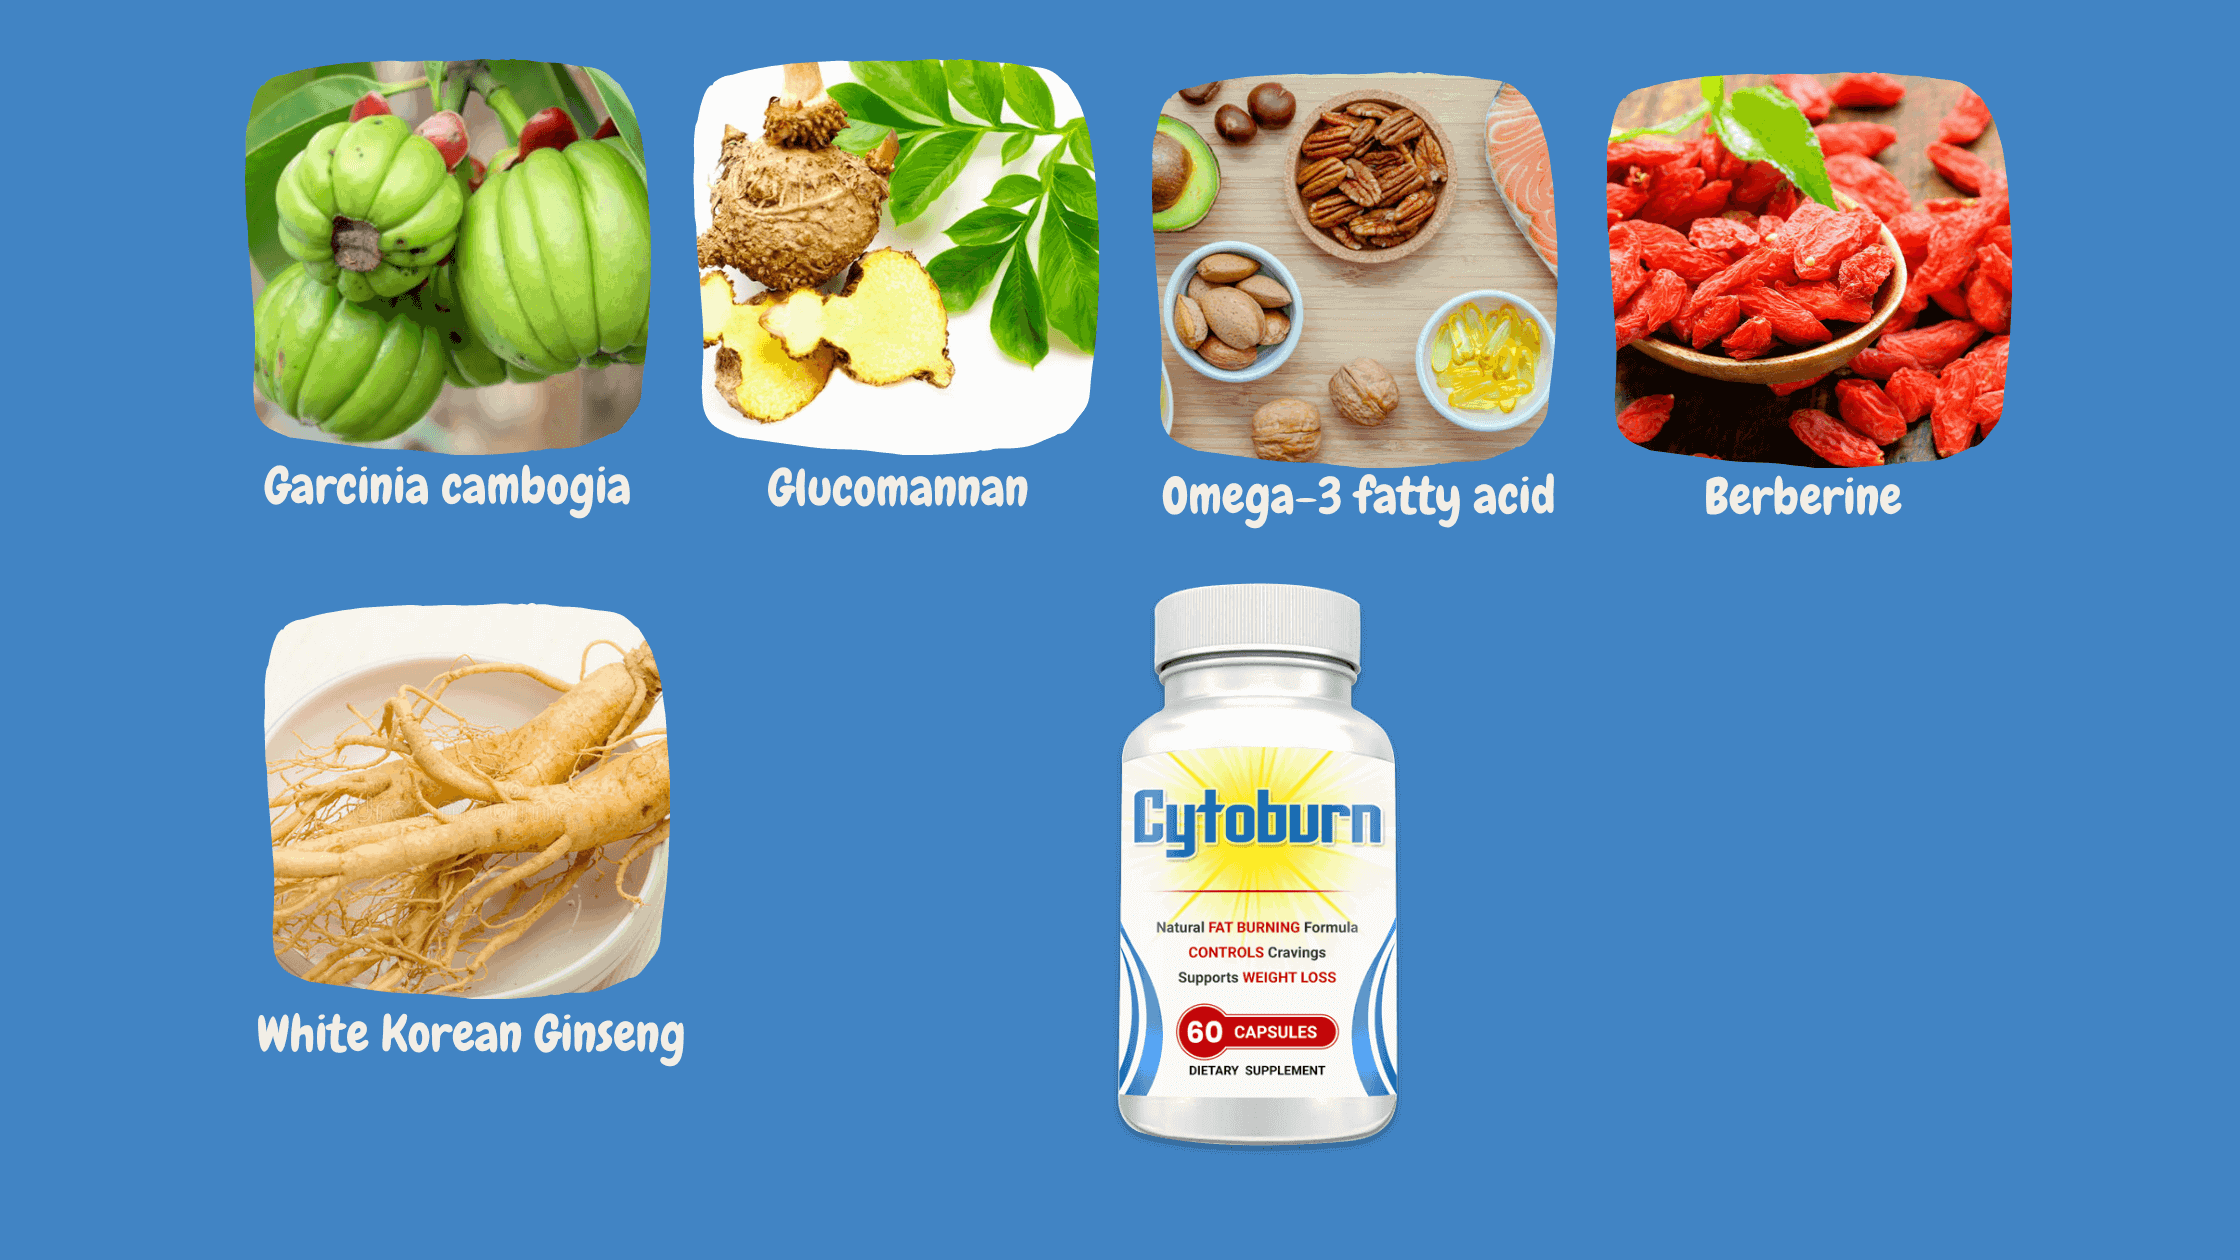 Cytoburn ingredients